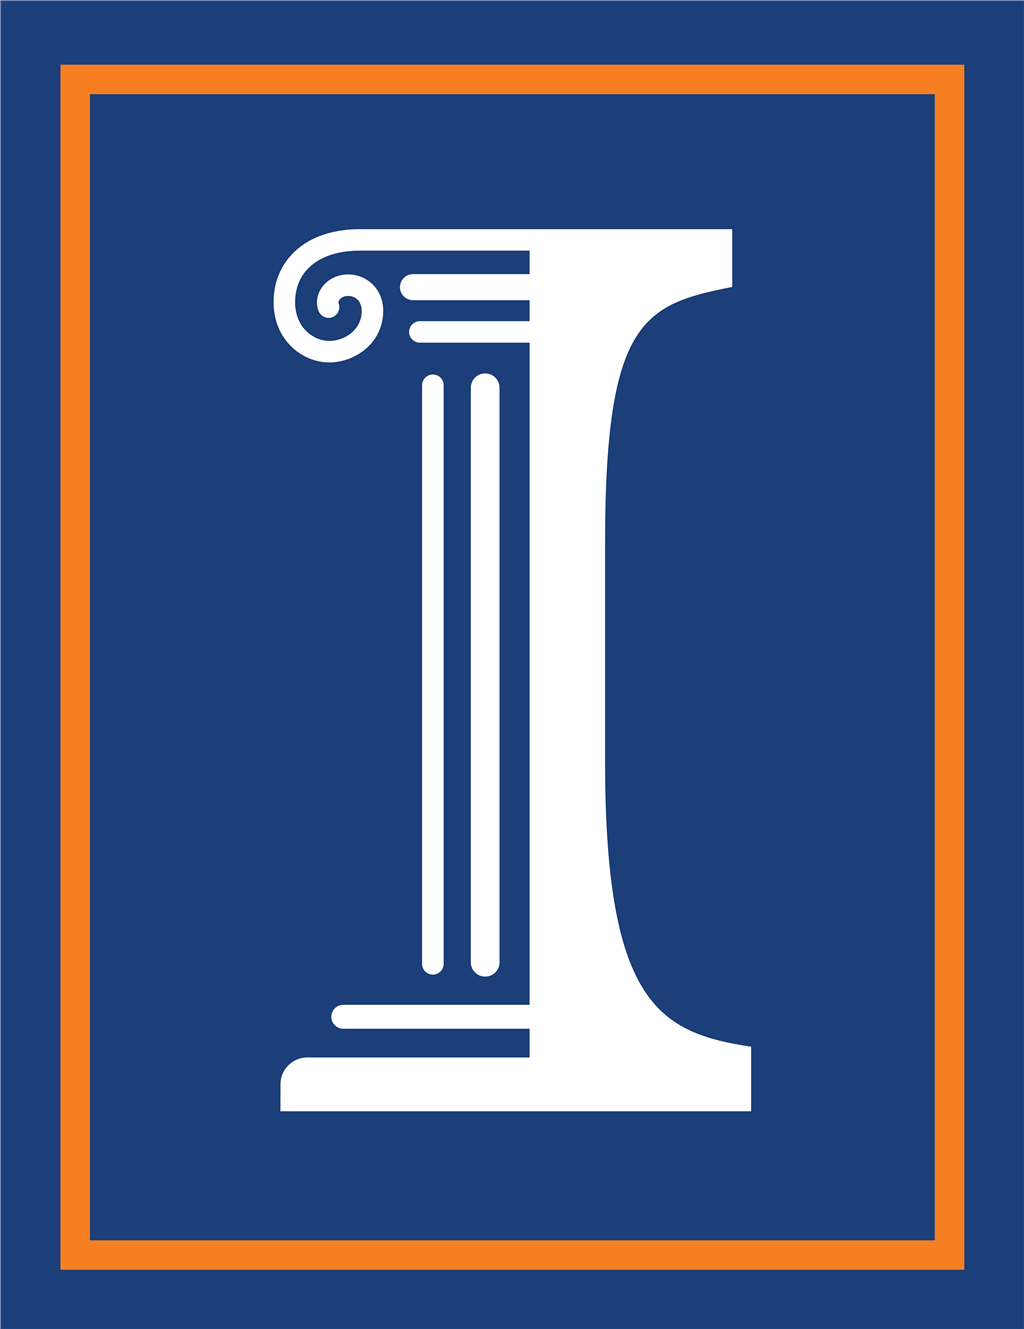 University of Illinois logotype, transparent .png, medium, large